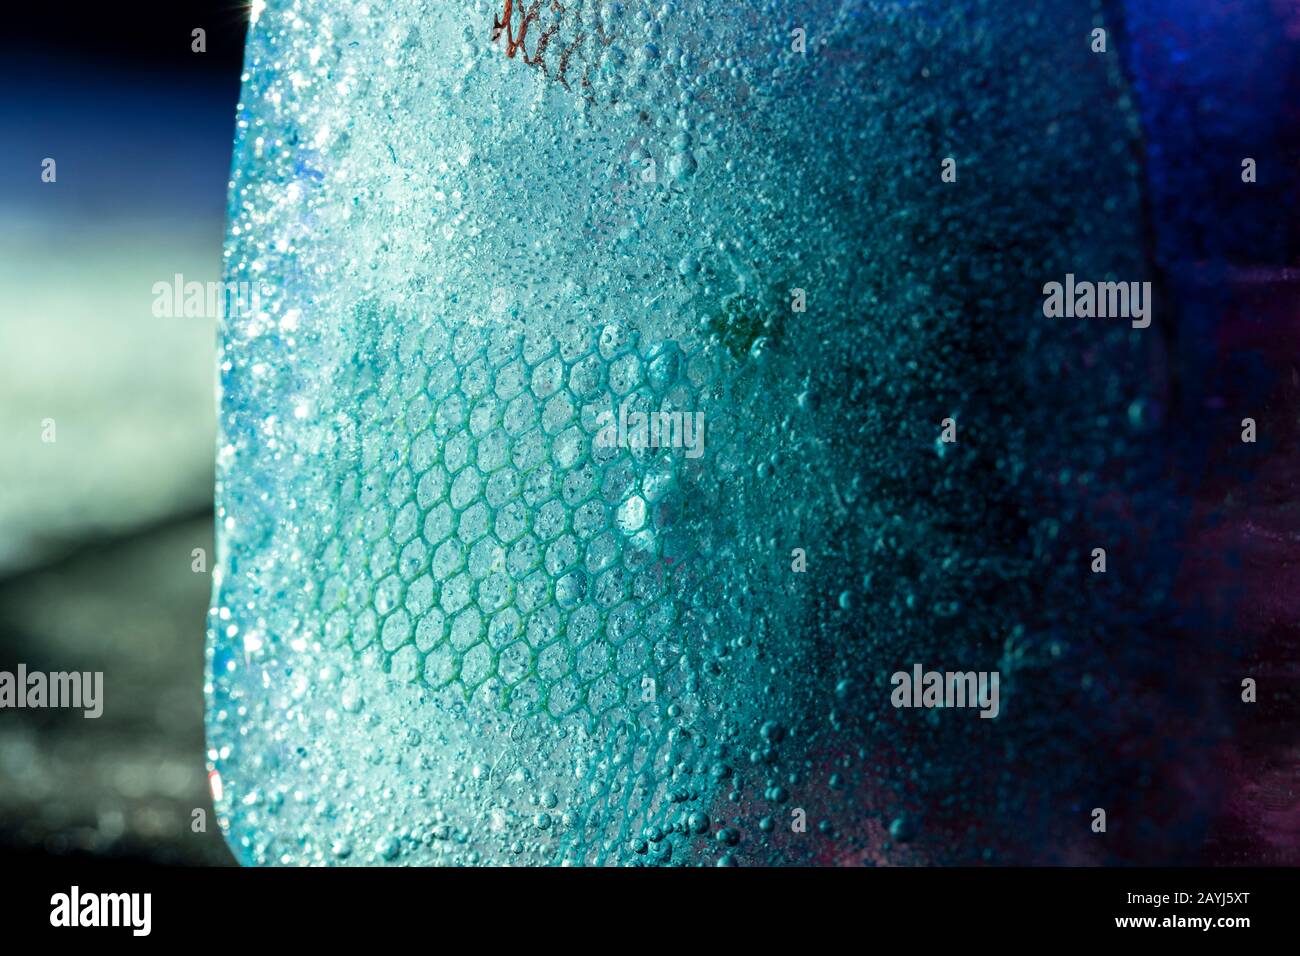 Beleuchteter Eisblock mit tiefgefrorener Textur - moderner abstrakter Makrohintergrund in Blautönen Stockfoto